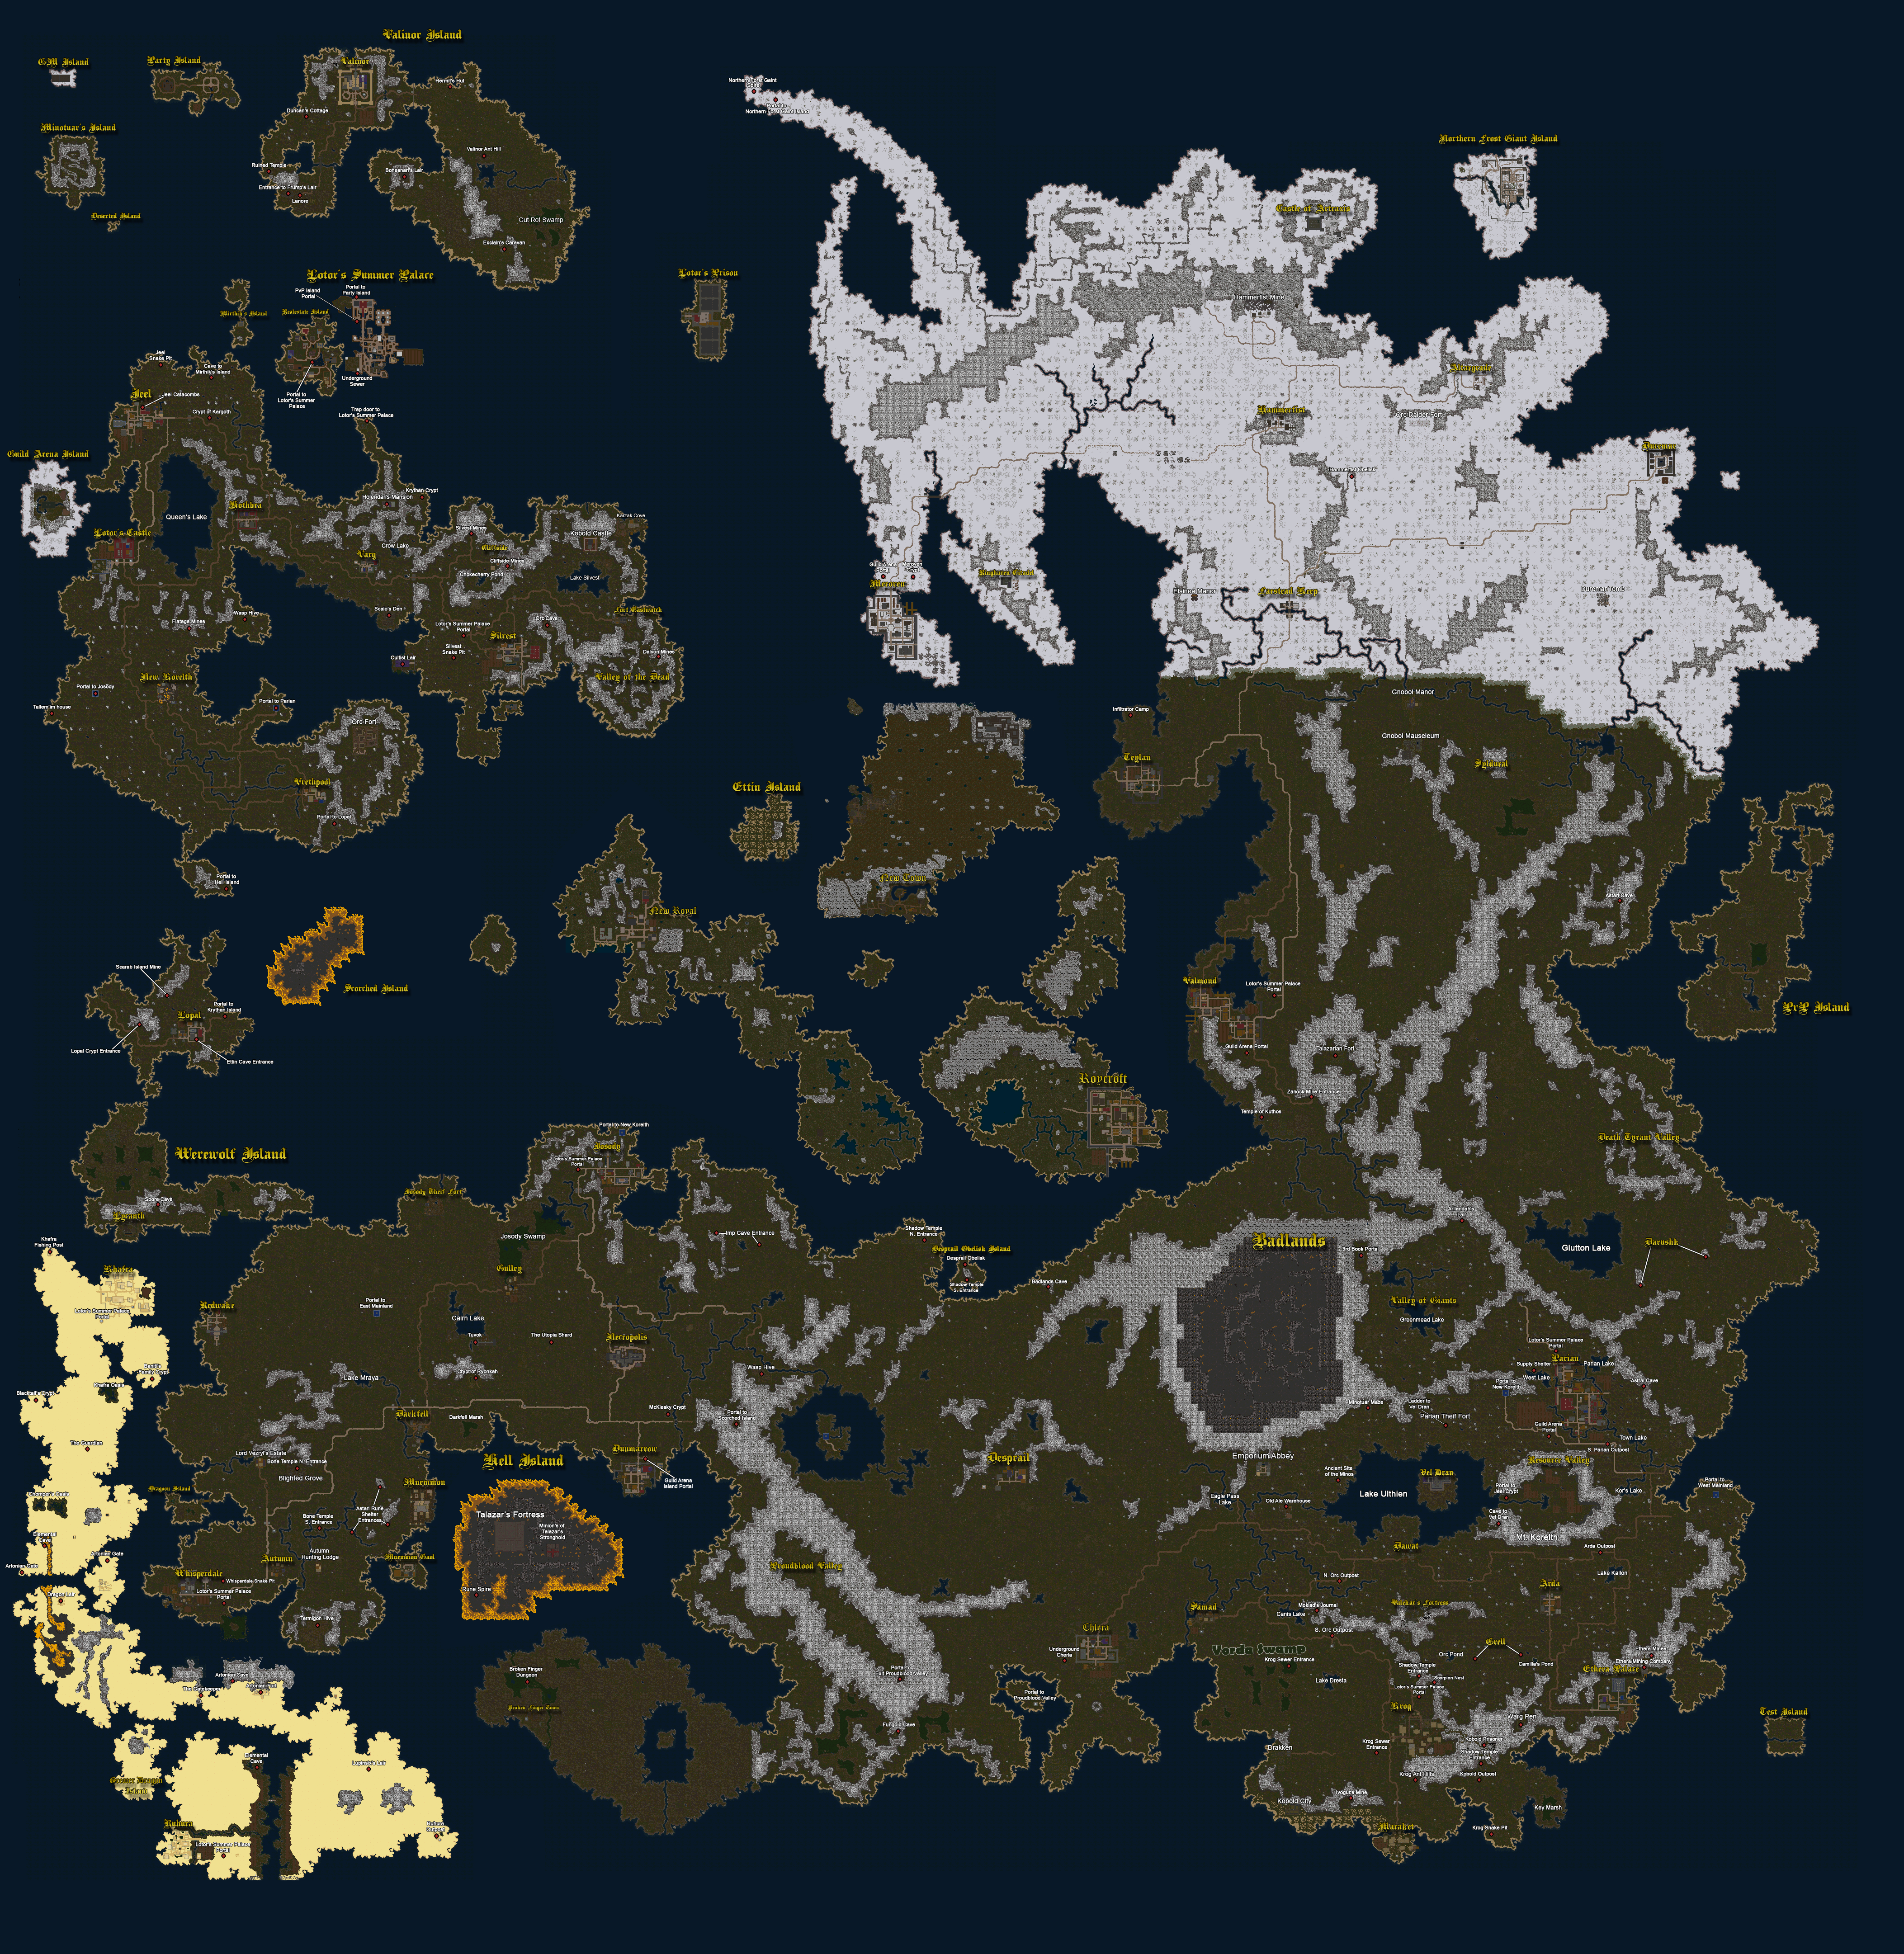 Valinor Map